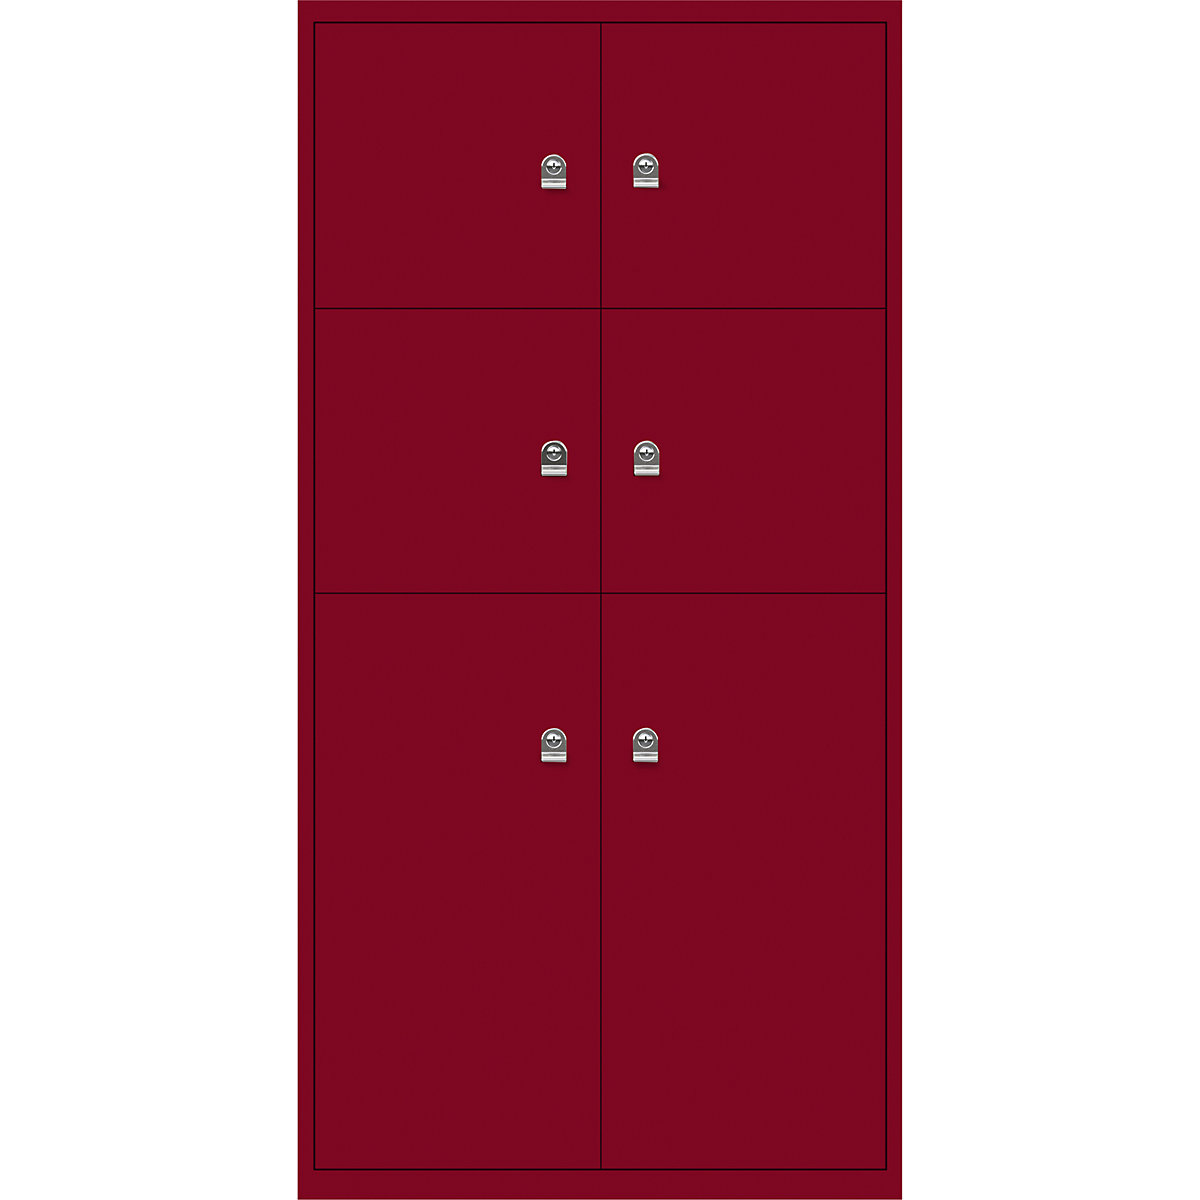 LateralFile™ Lodge BISLEY, mit 6 Schließfächern, Höhe 4 x 375 mm, 2 x 755 mm, kardinalrot-3